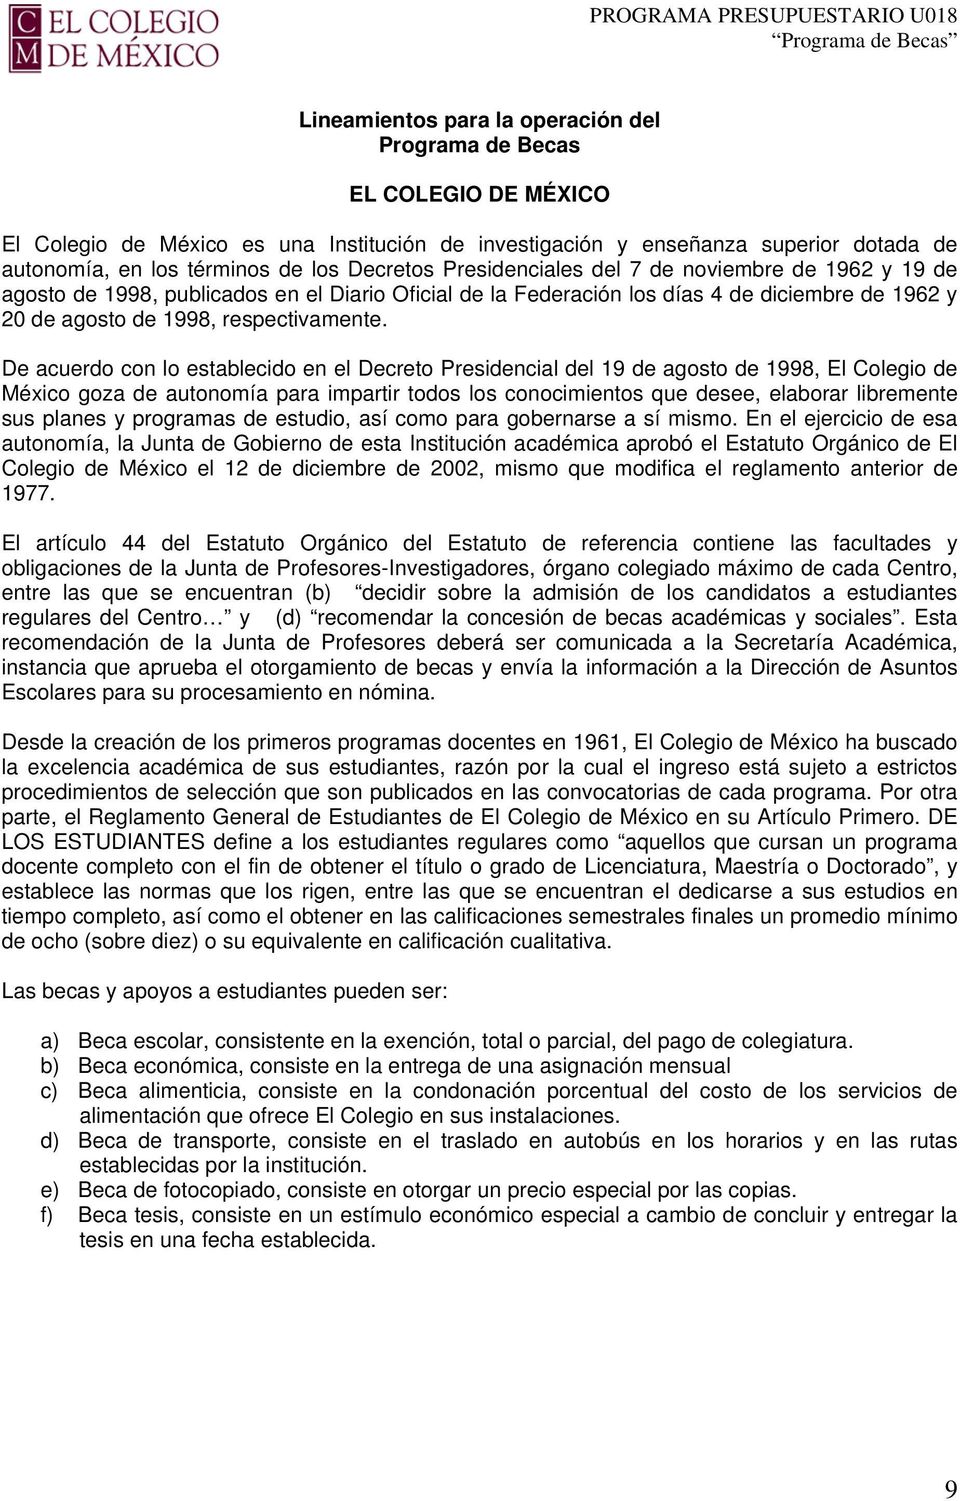 De acuerdo con lo establecido en el Decreto Presidencial del 19 de agosto de 1998, El Colegio de México goza de autonomía para impartir todos los conocimientos que desee, elaborar libremente sus